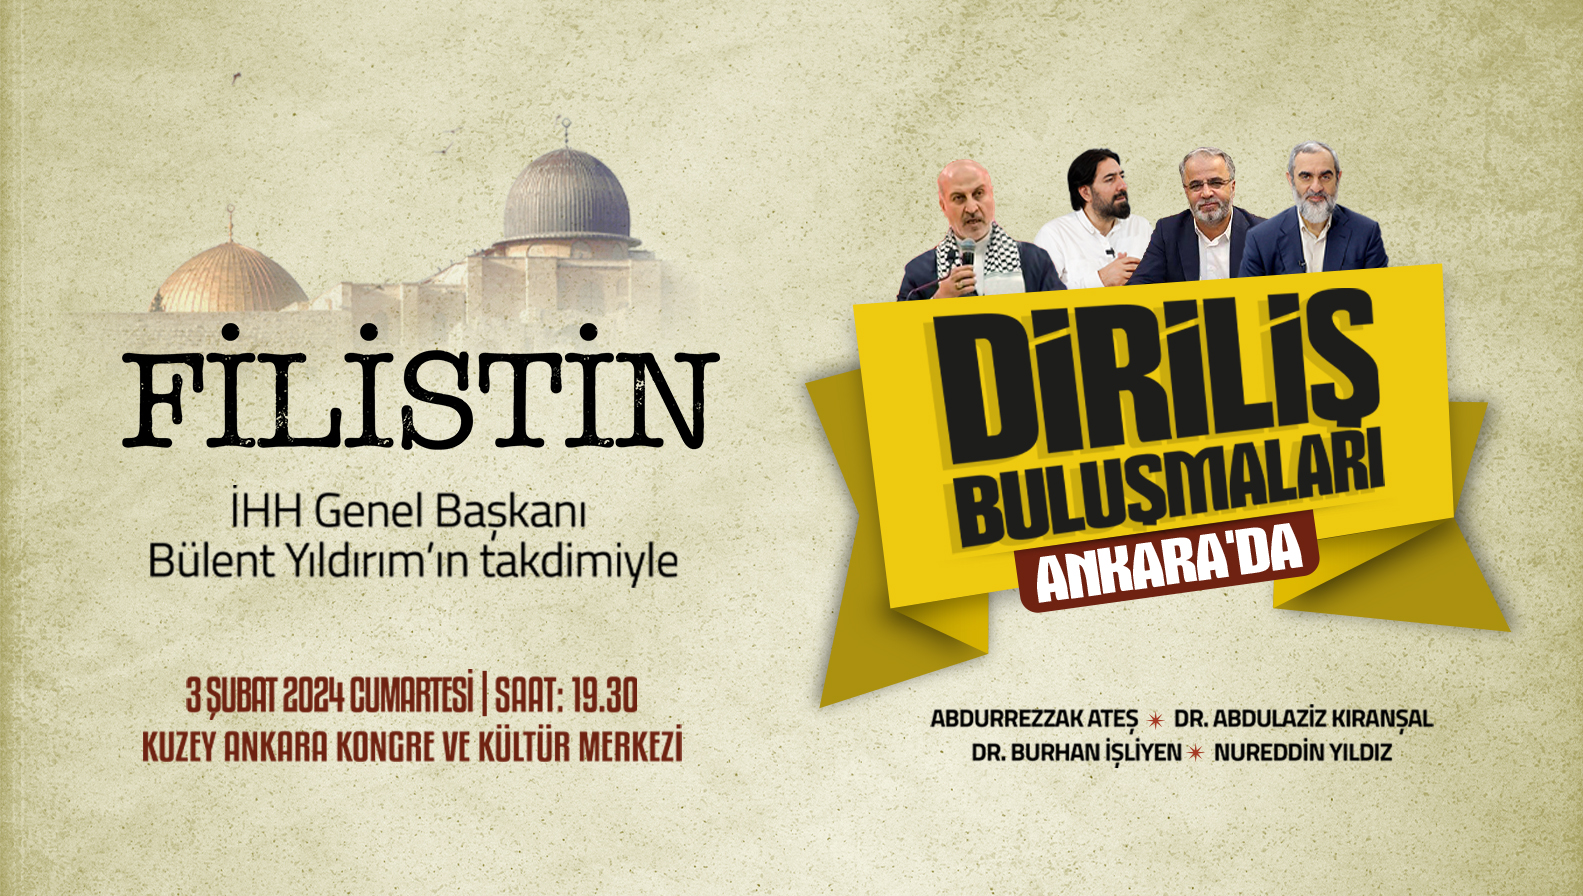 Diriliş Buluşmaları "Filistin" gündemiyle Ankara'da düzenlenecek